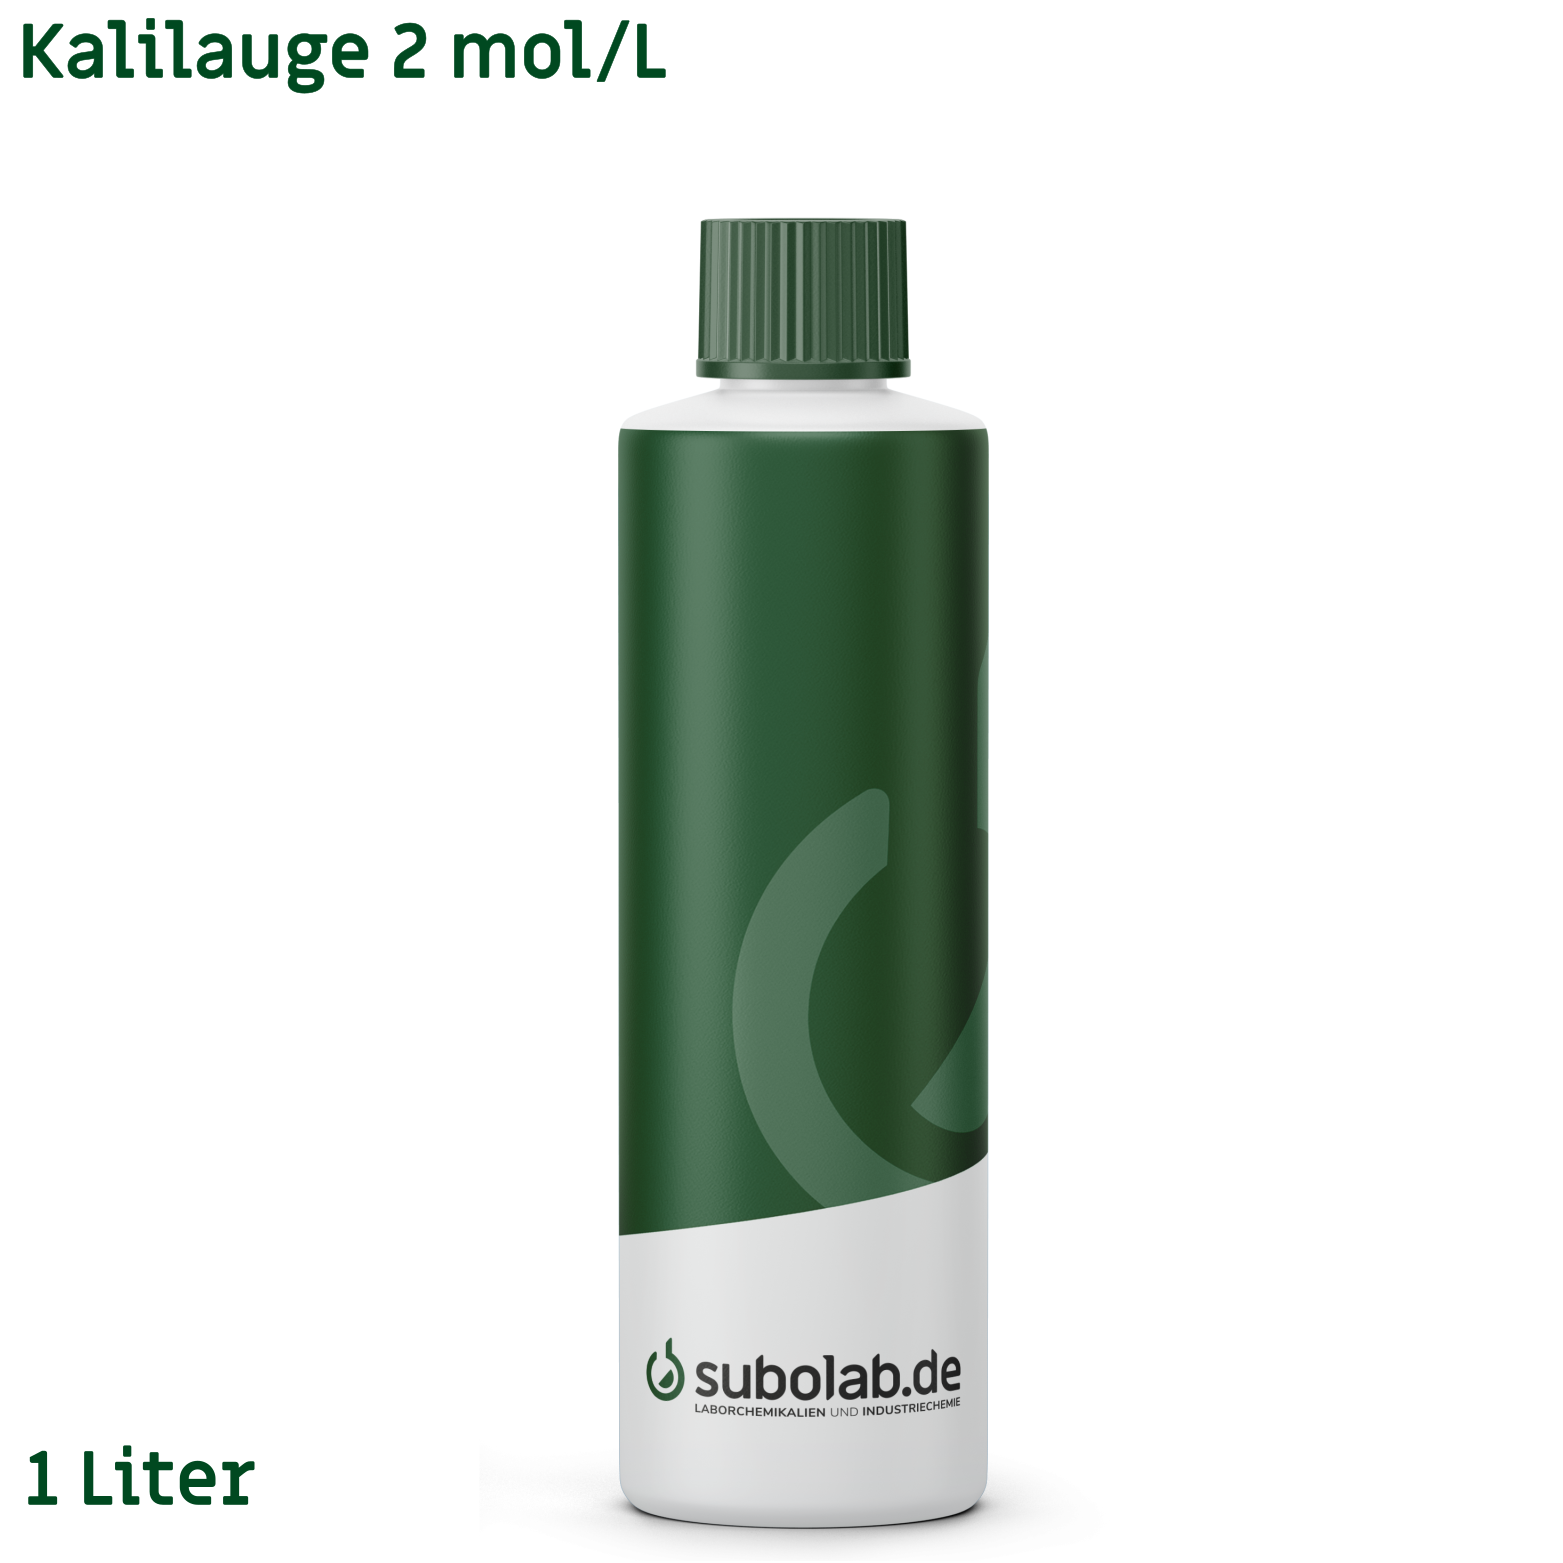 Bild von Kalilauge 2 mol/L (1 Liter)